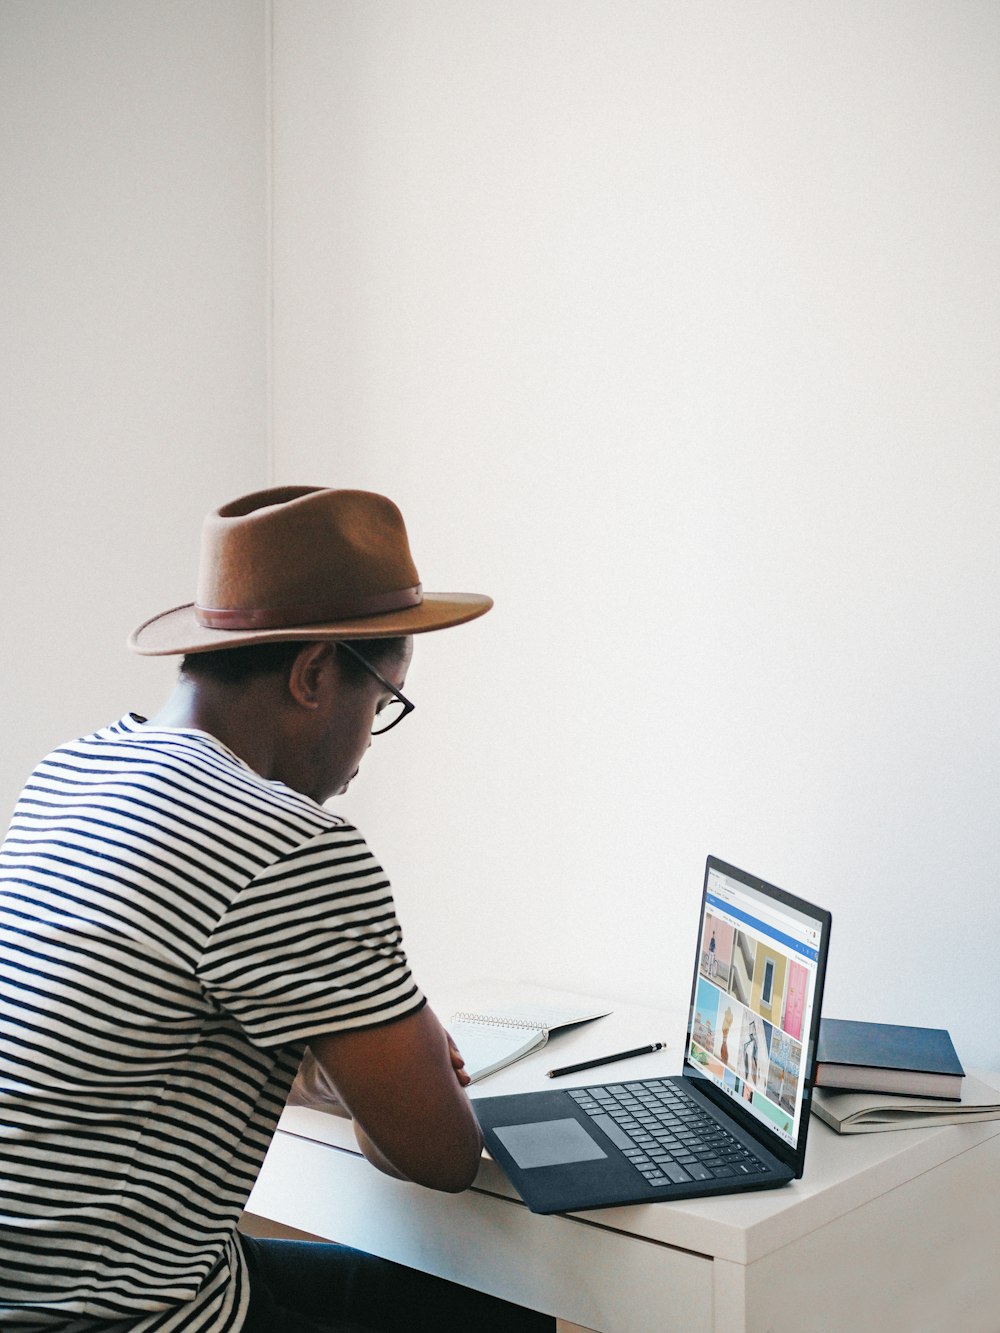 茶色の帽子をかぶった白と黒のストライプのシャツを着た男性が、Microsoft Surfaceのコバルトノートパソコンを使って椅子に座っている